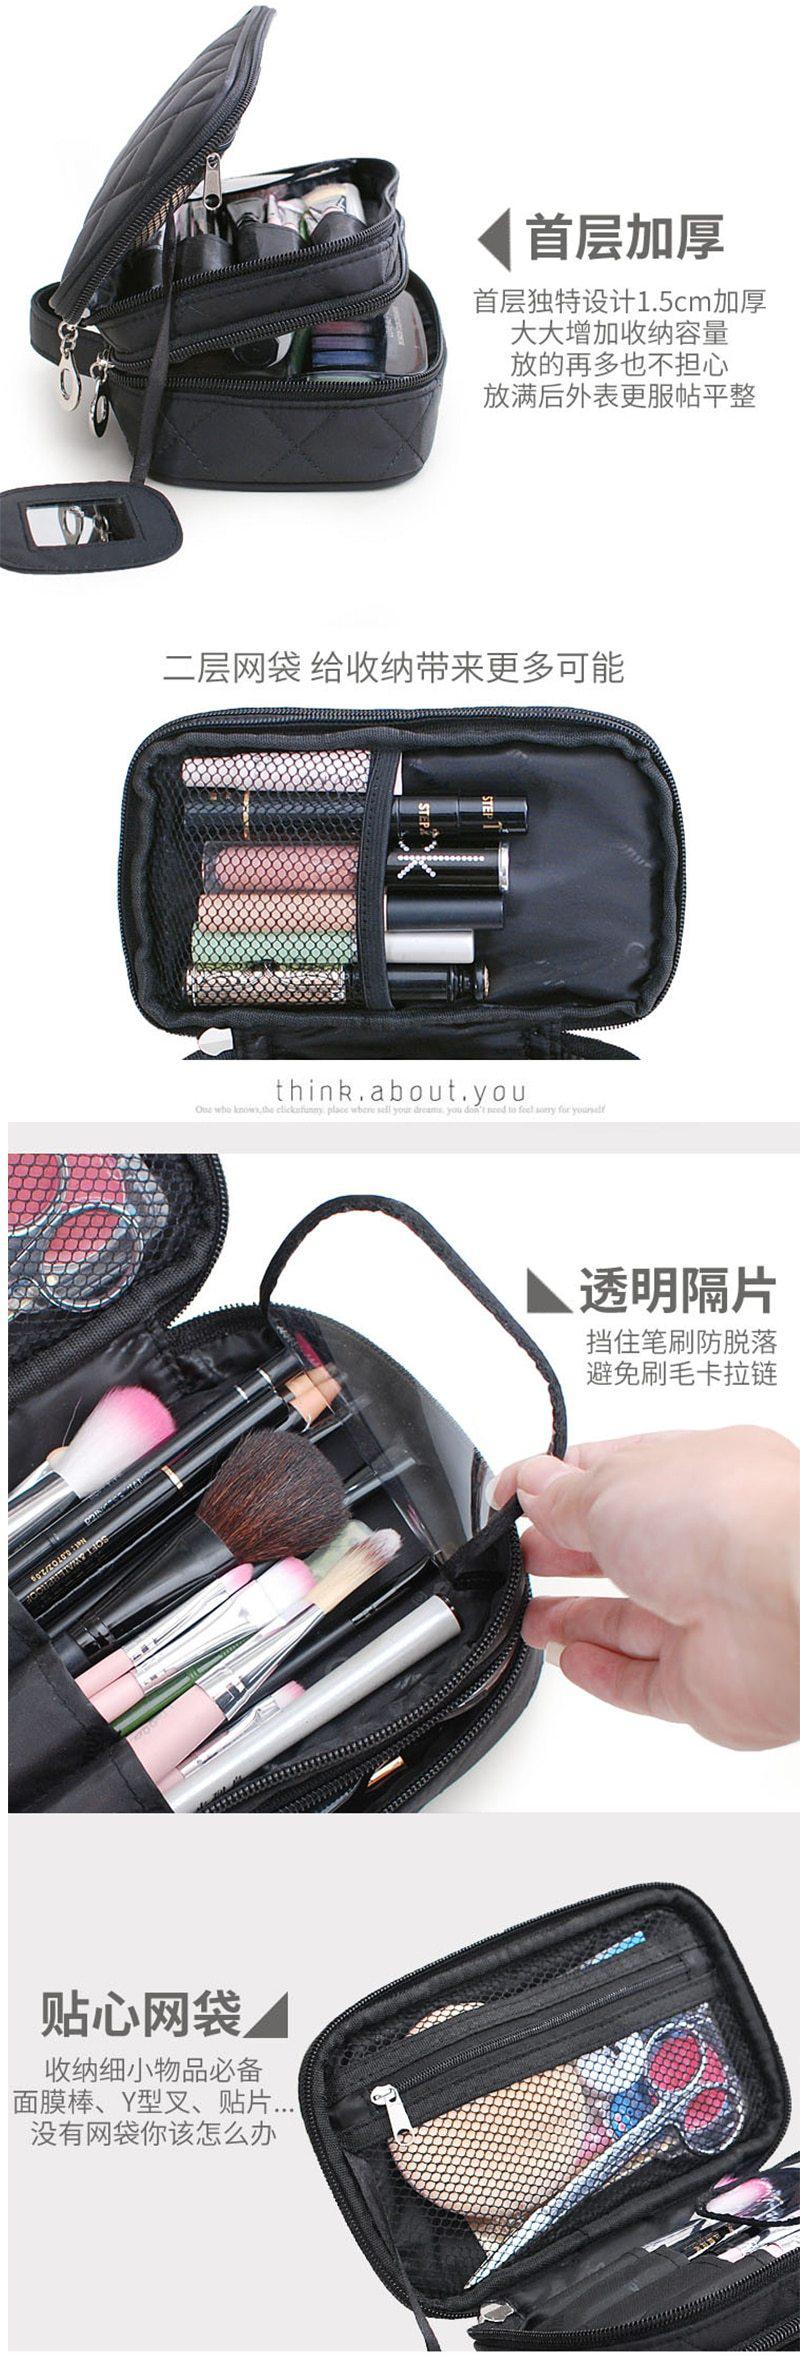 Quilted Black Travel makeup bag